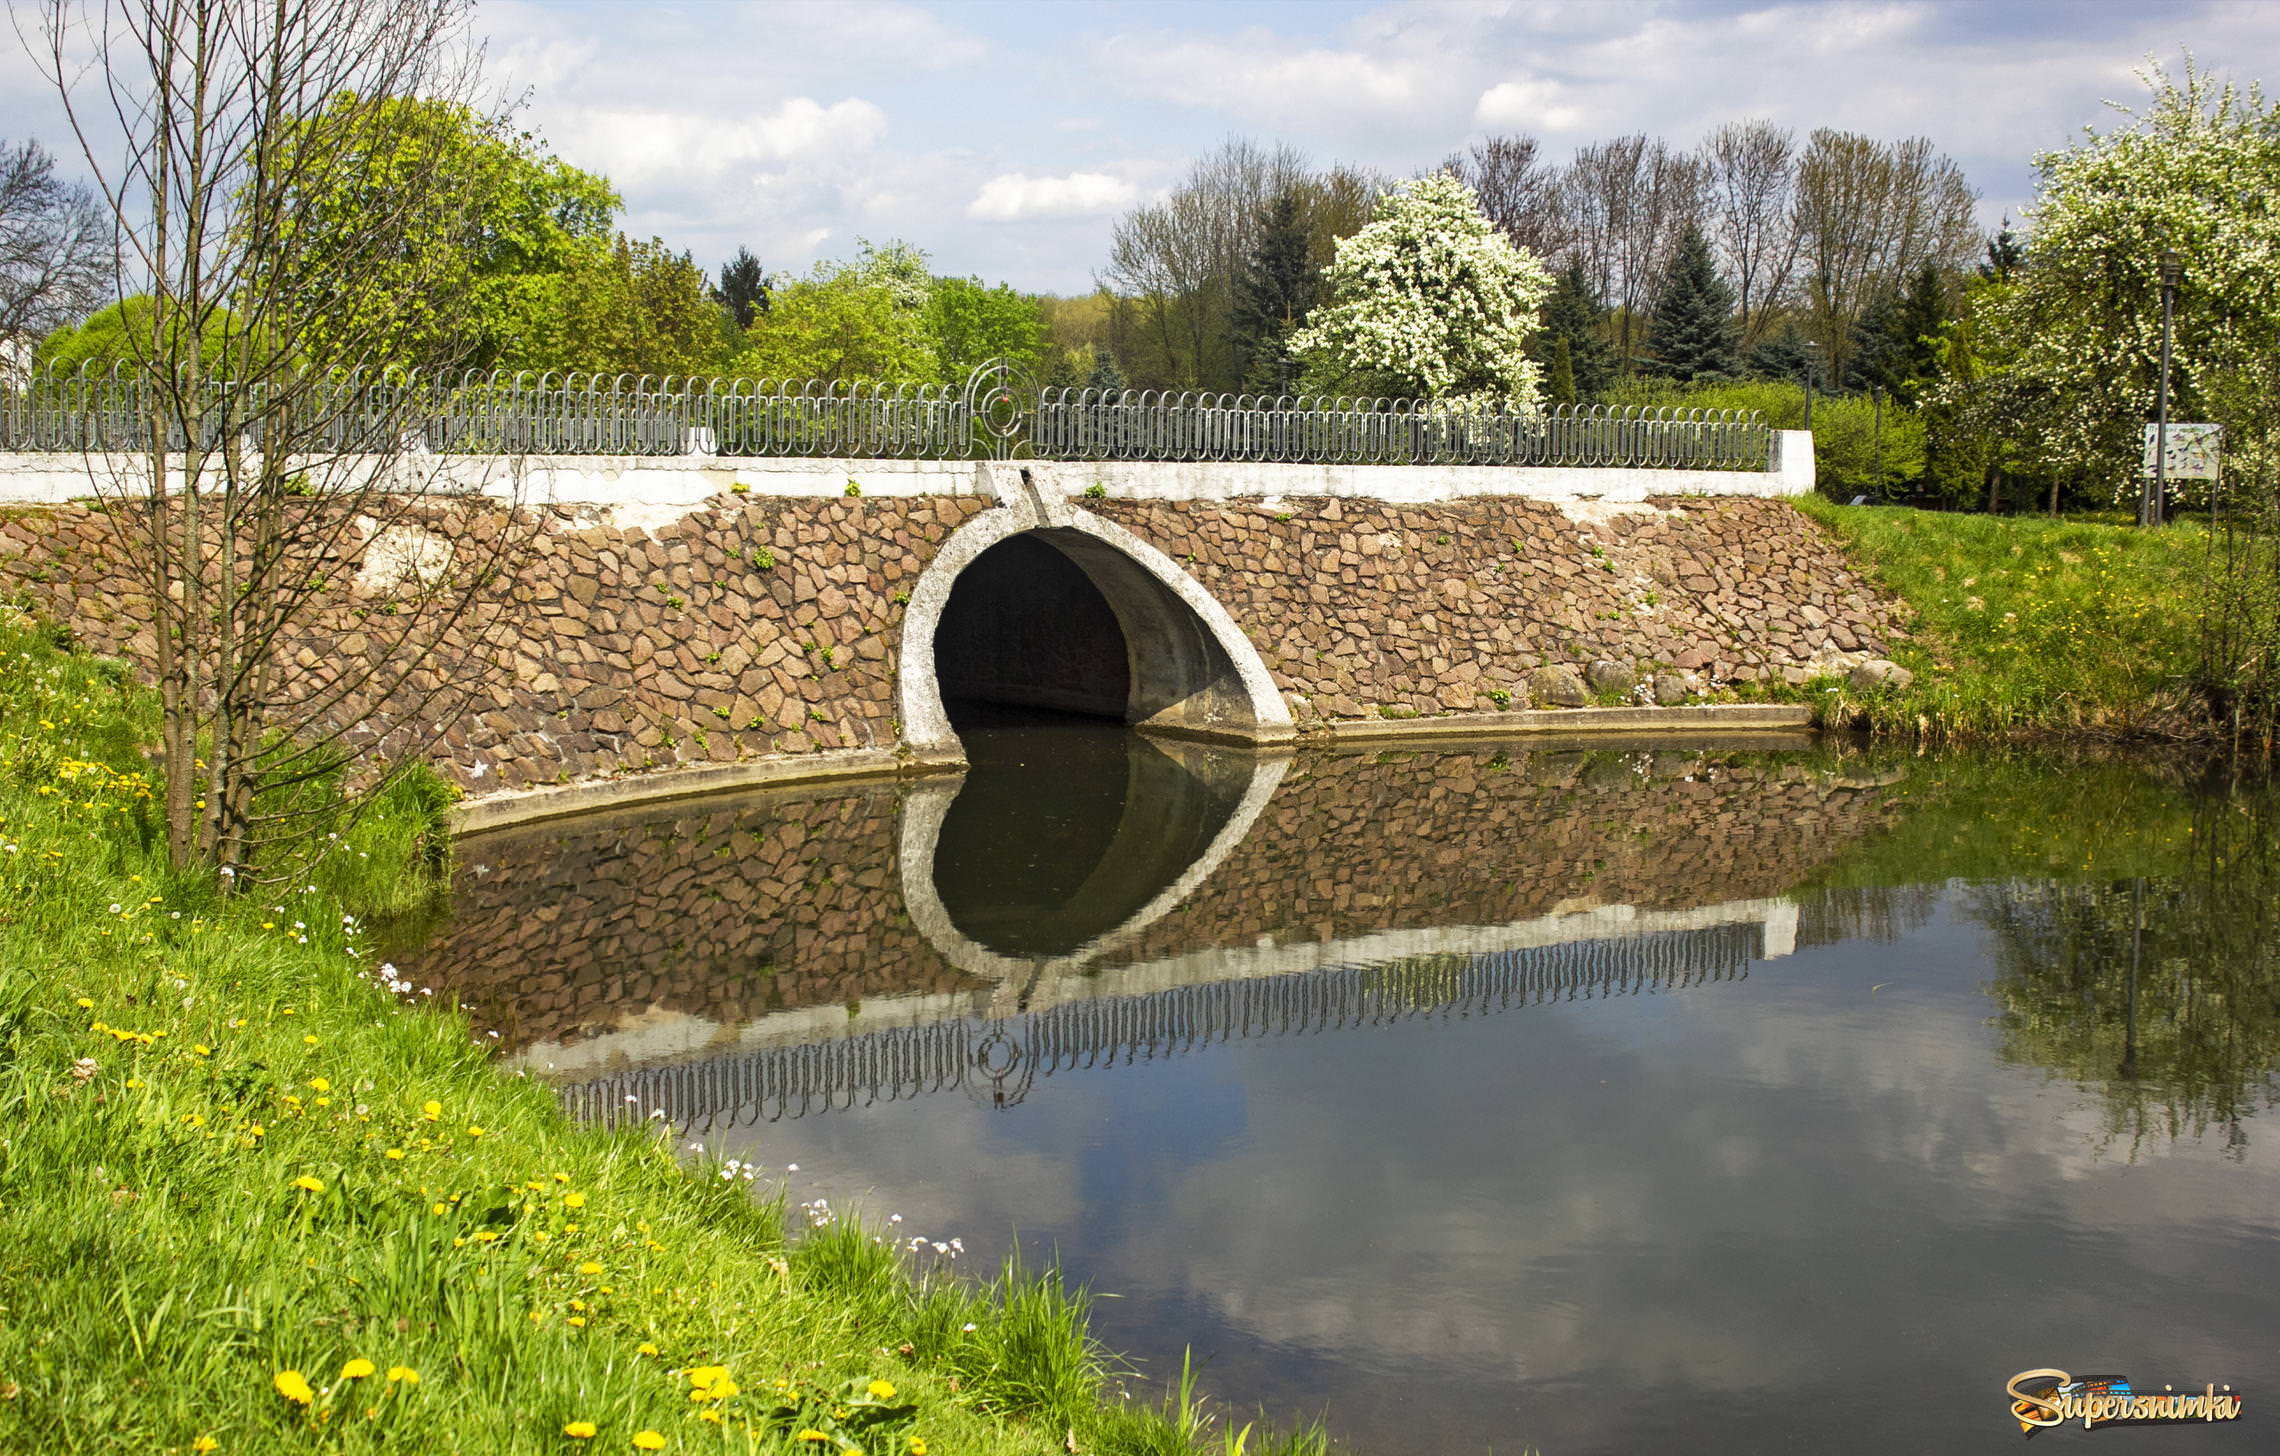 Stone bridge over the river in spring in the park